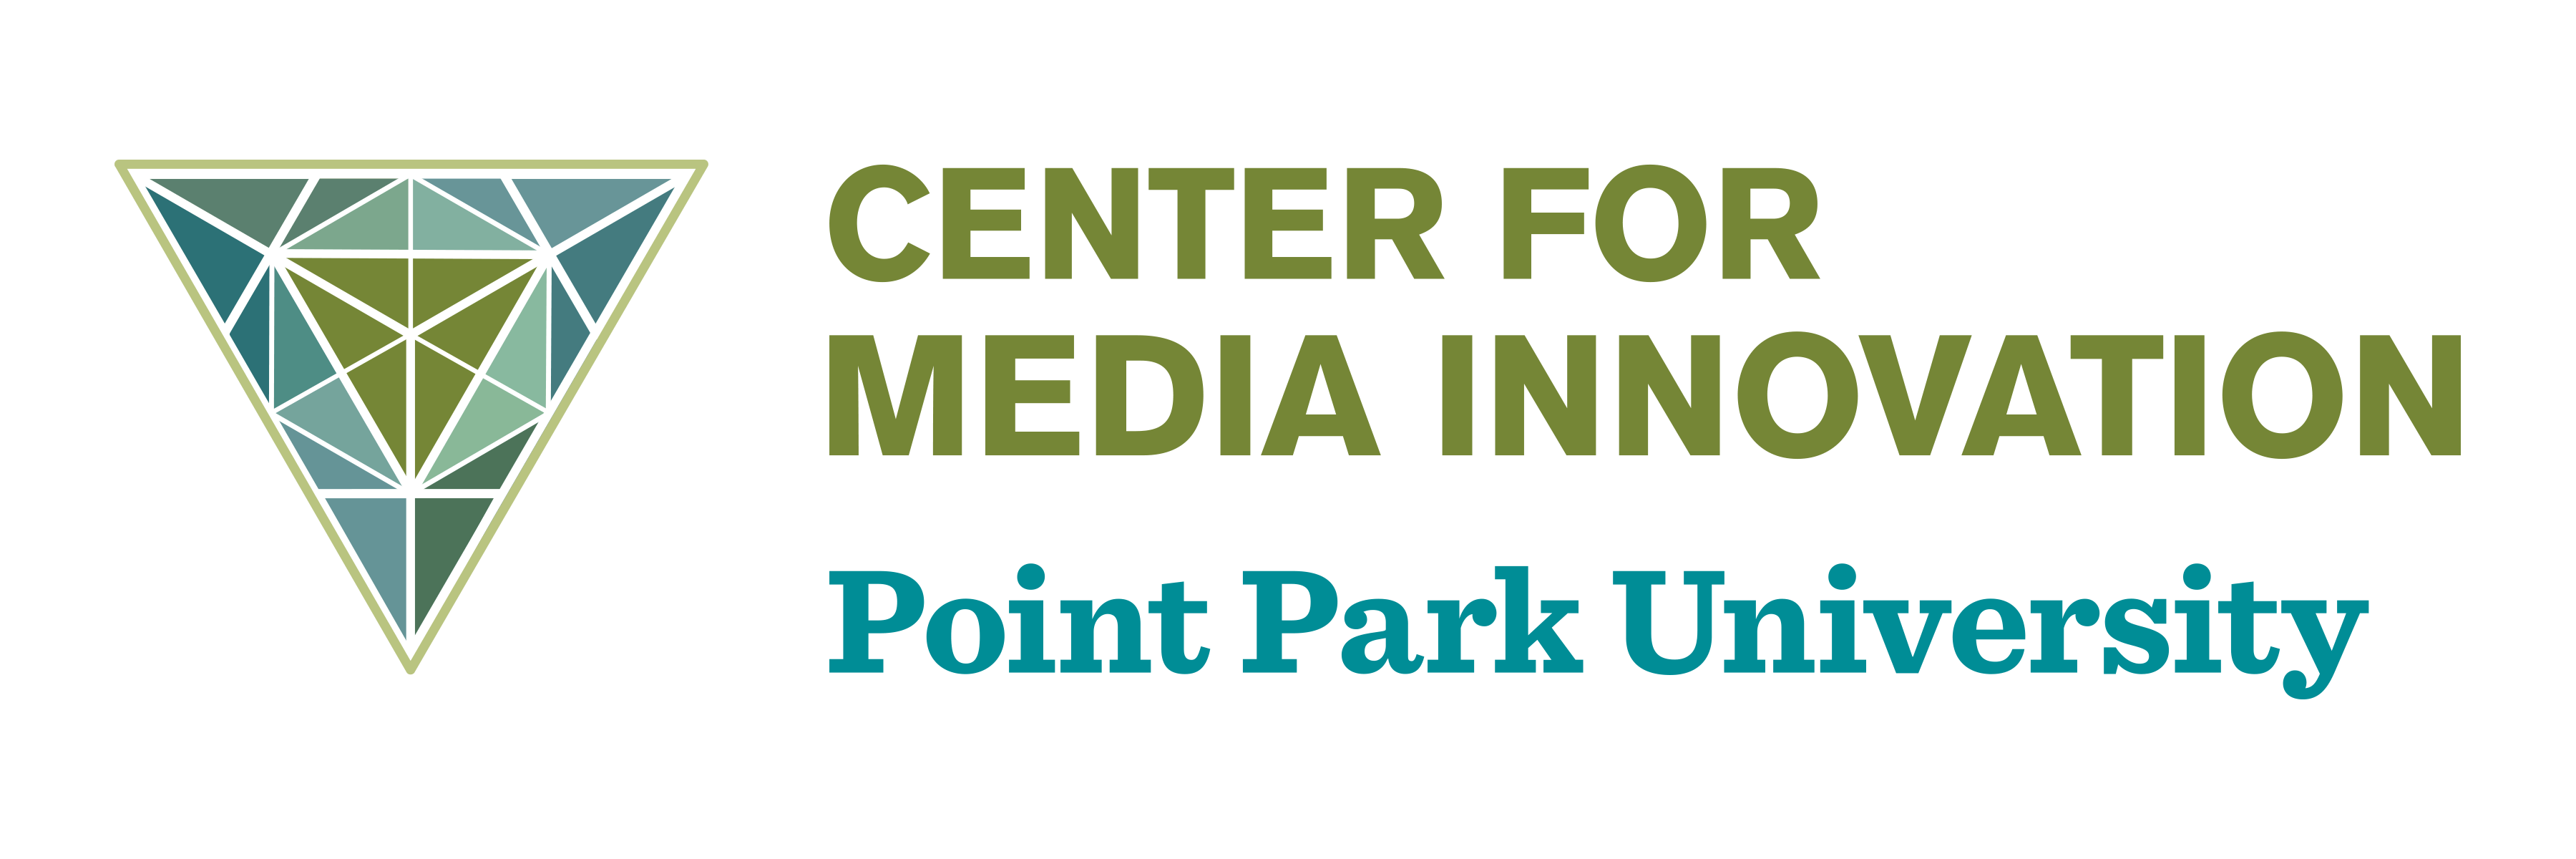 Point Park Center for Media Innovation